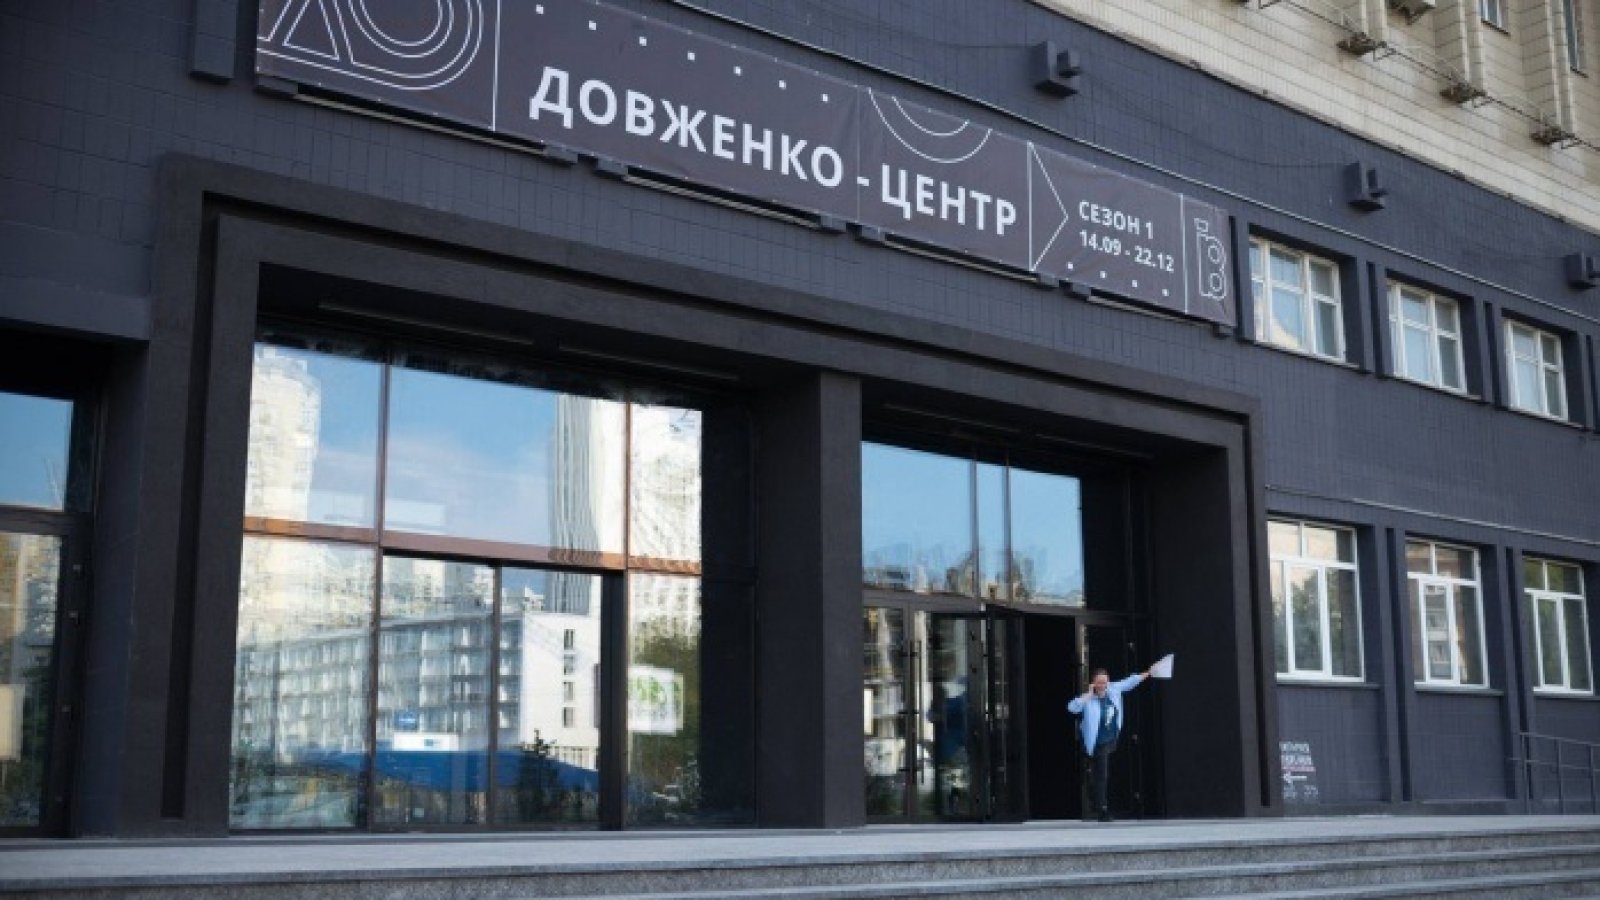 Держкіно оголосило конкурс на призначення нового керівника “Довженко-Центру”